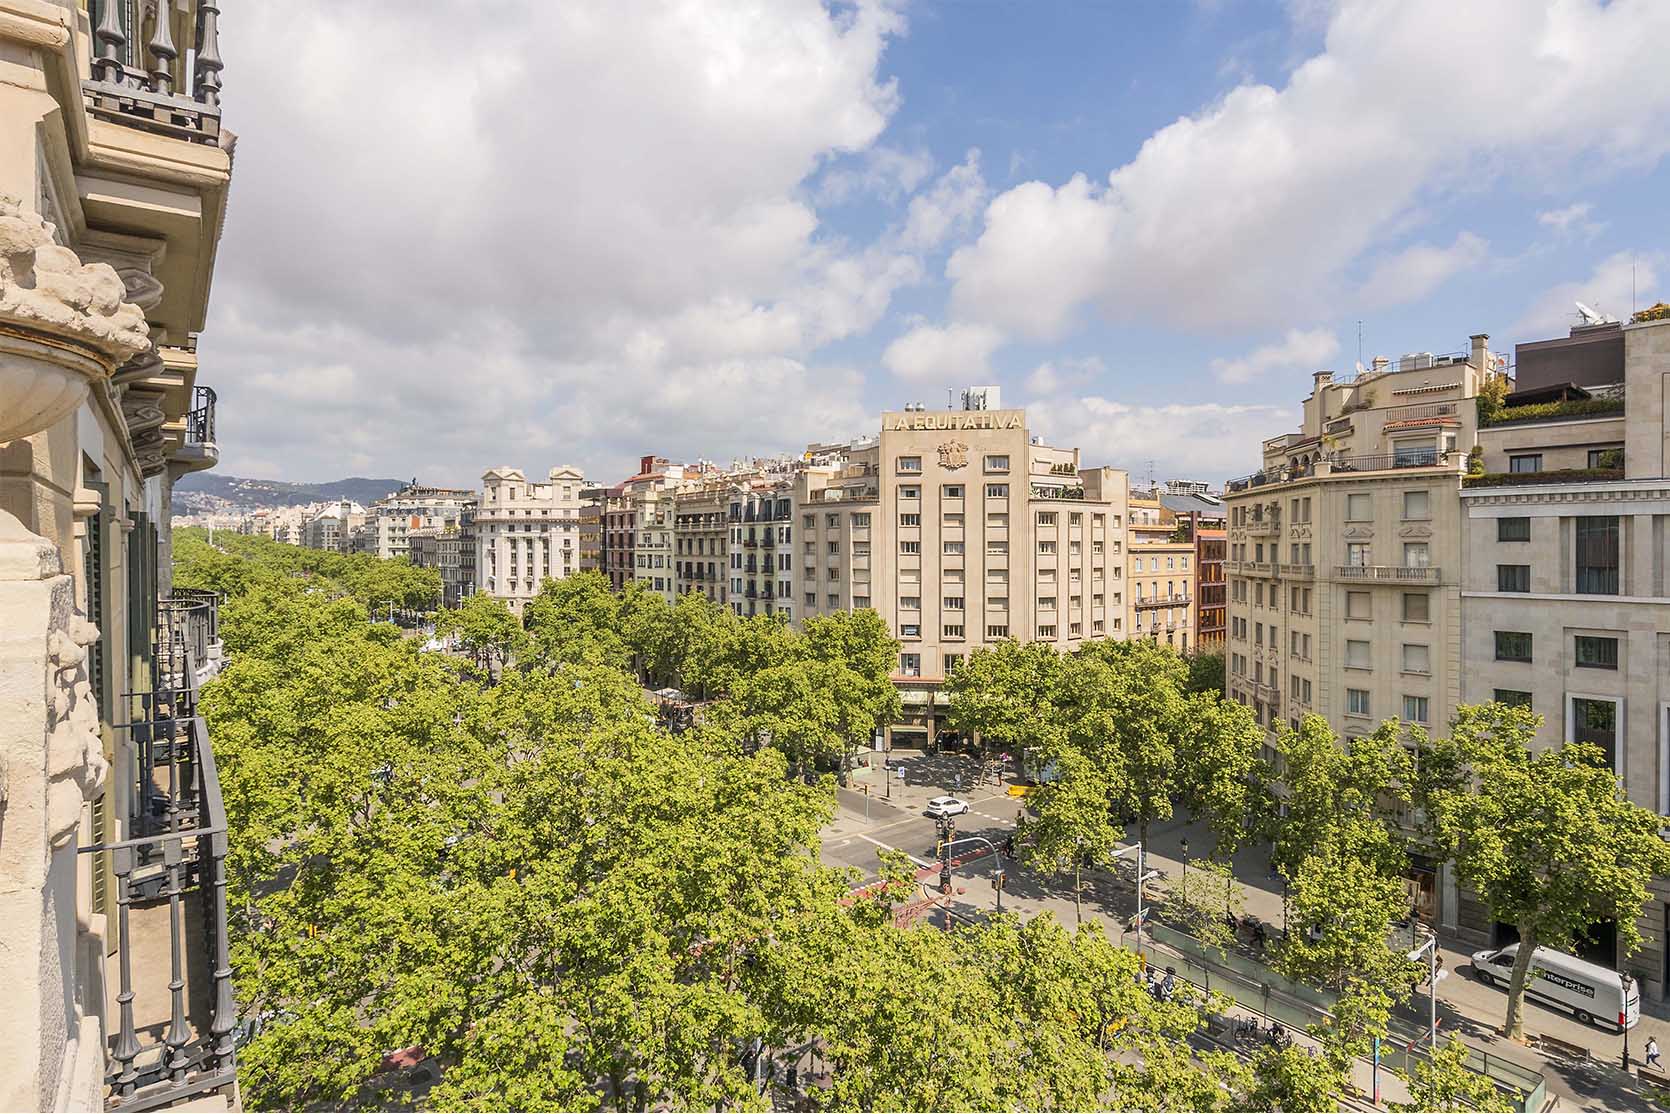 Alting Real Estate Group. 5-star hotel in 29-31 Passeig de Gràcia